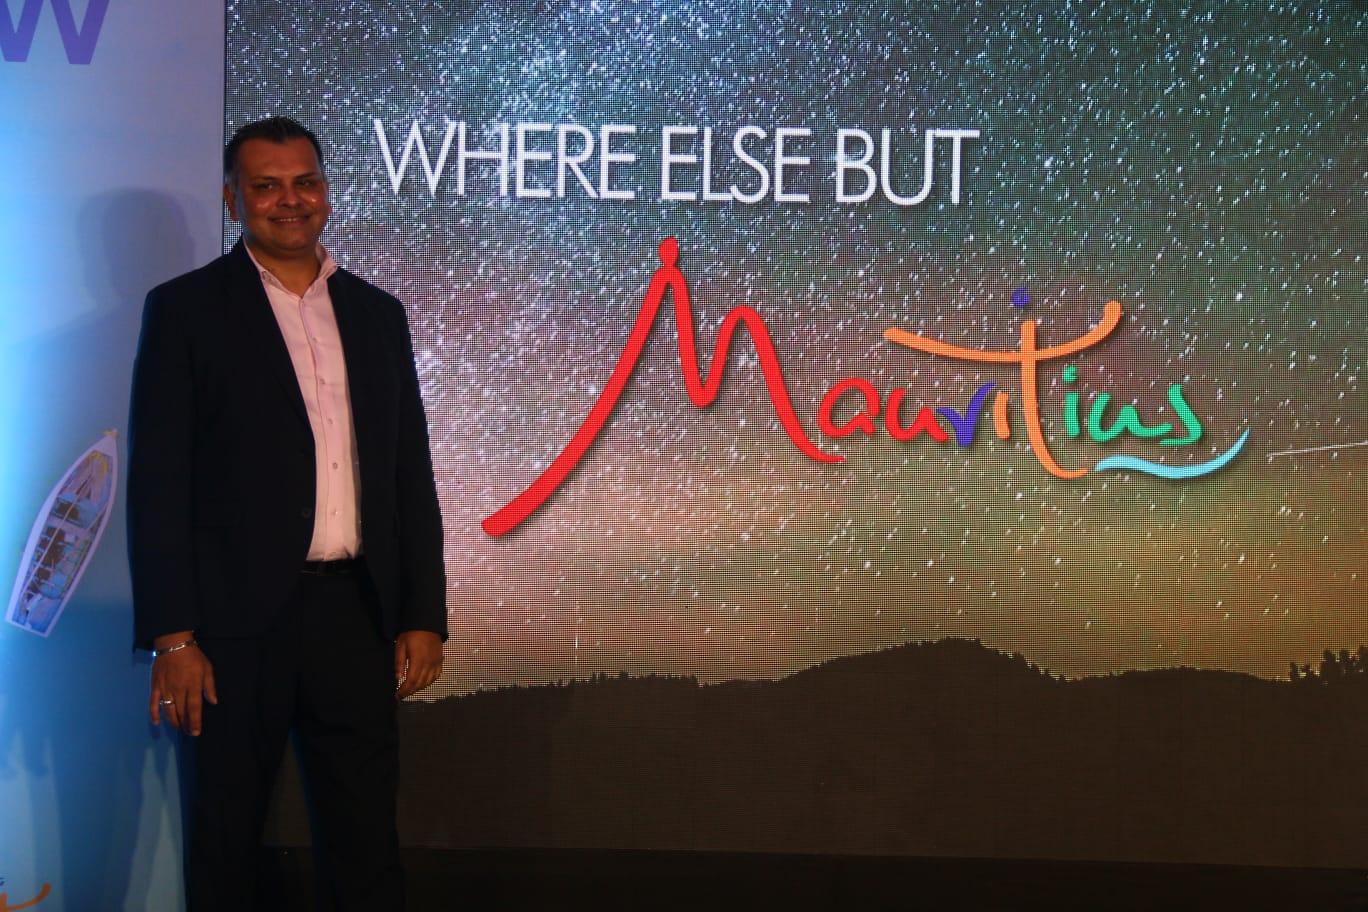 mauritius tourism board india